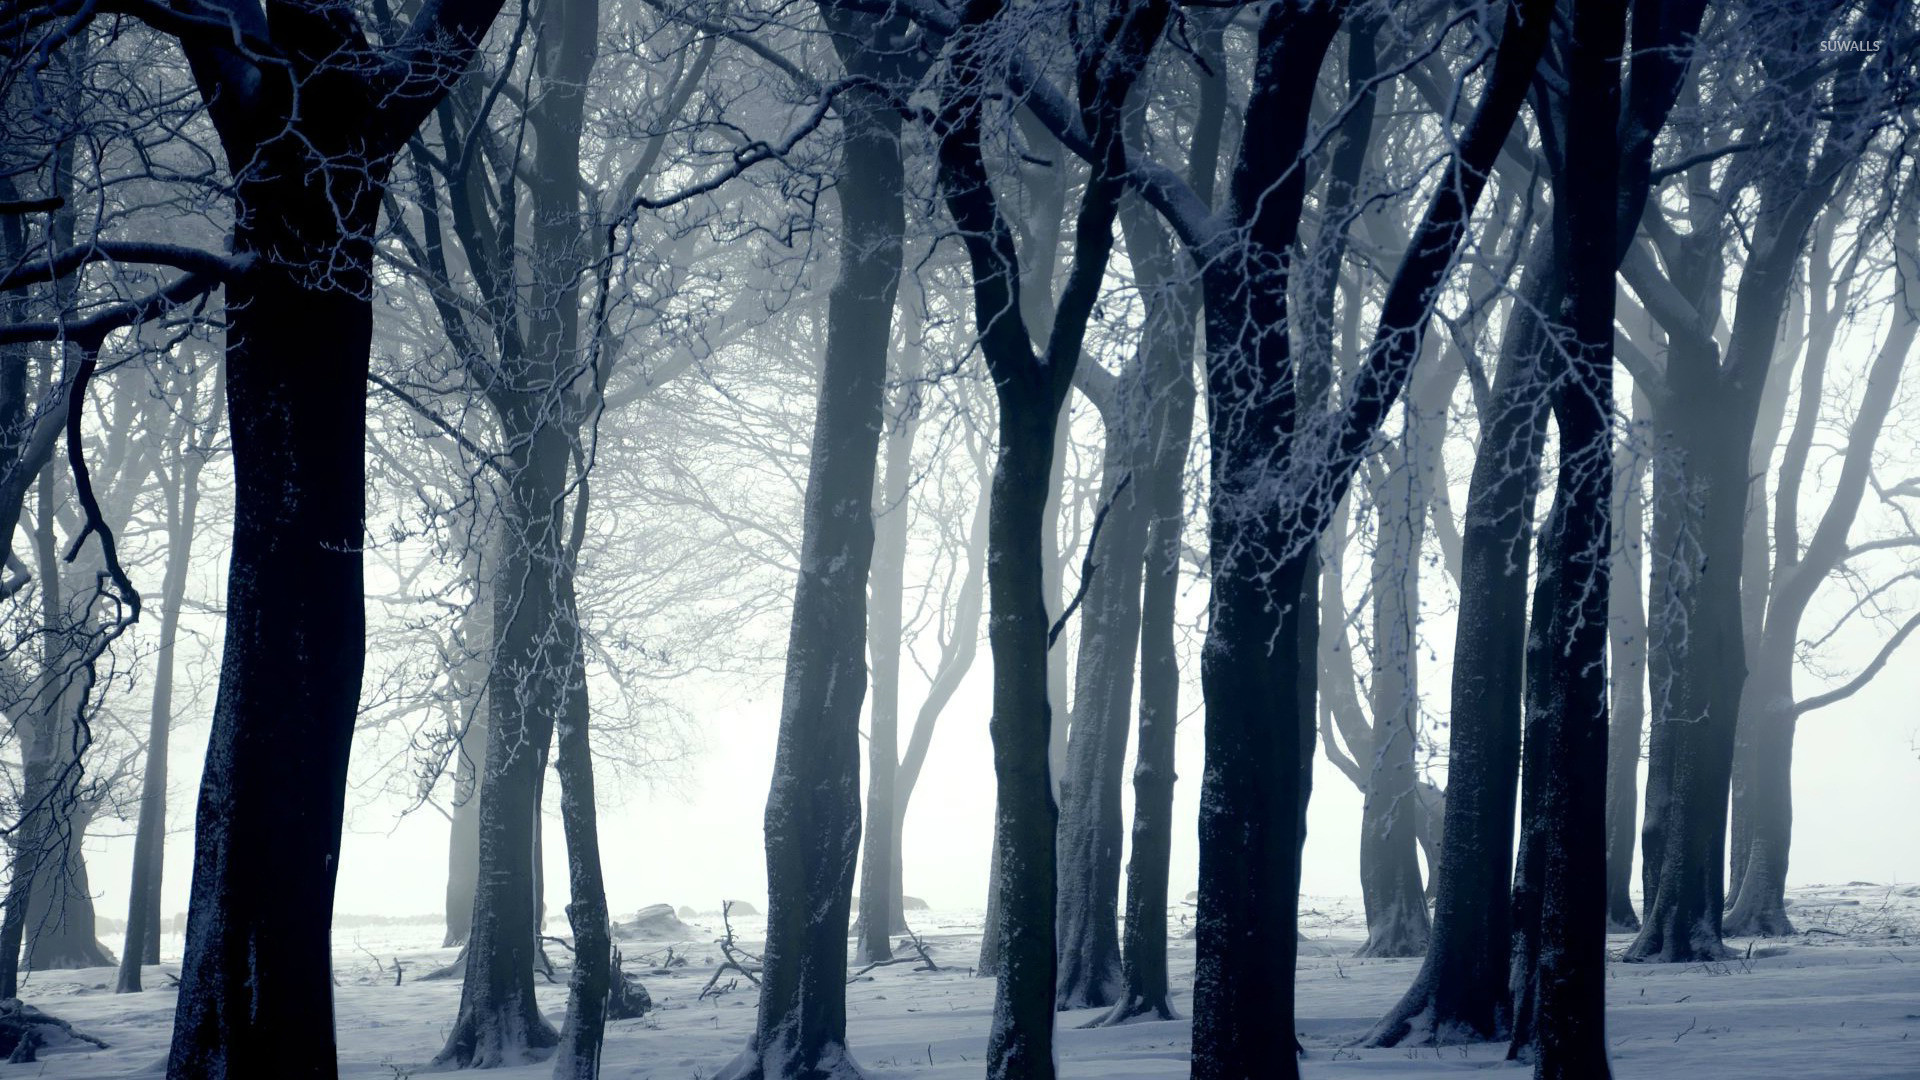 1920x1080  Dark forest in winter wallpaper Â· Download Â· Download.